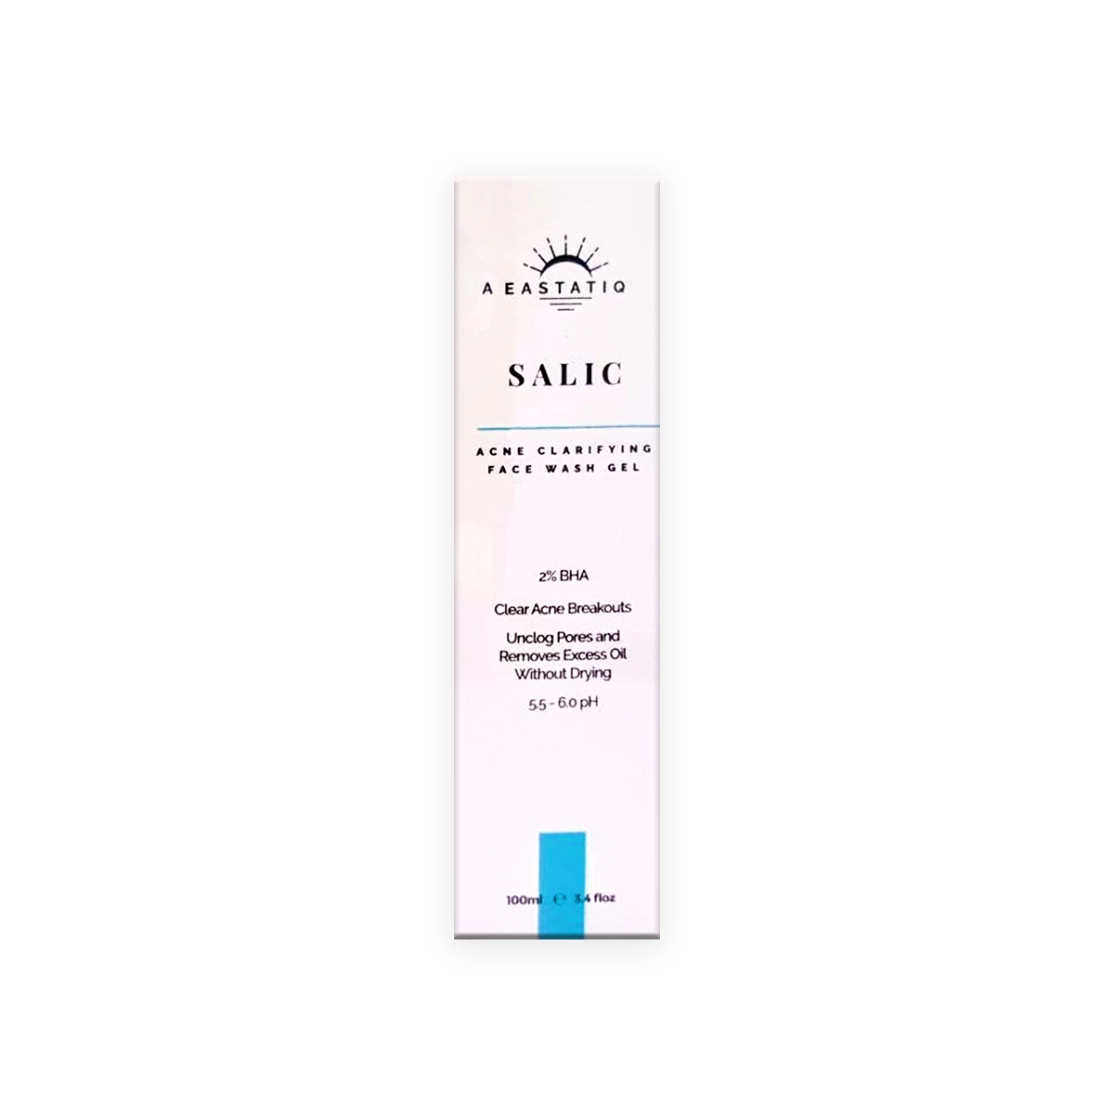 First product image of Eastatiq Salic Acne Clarifying Face Wash Gel 100ml